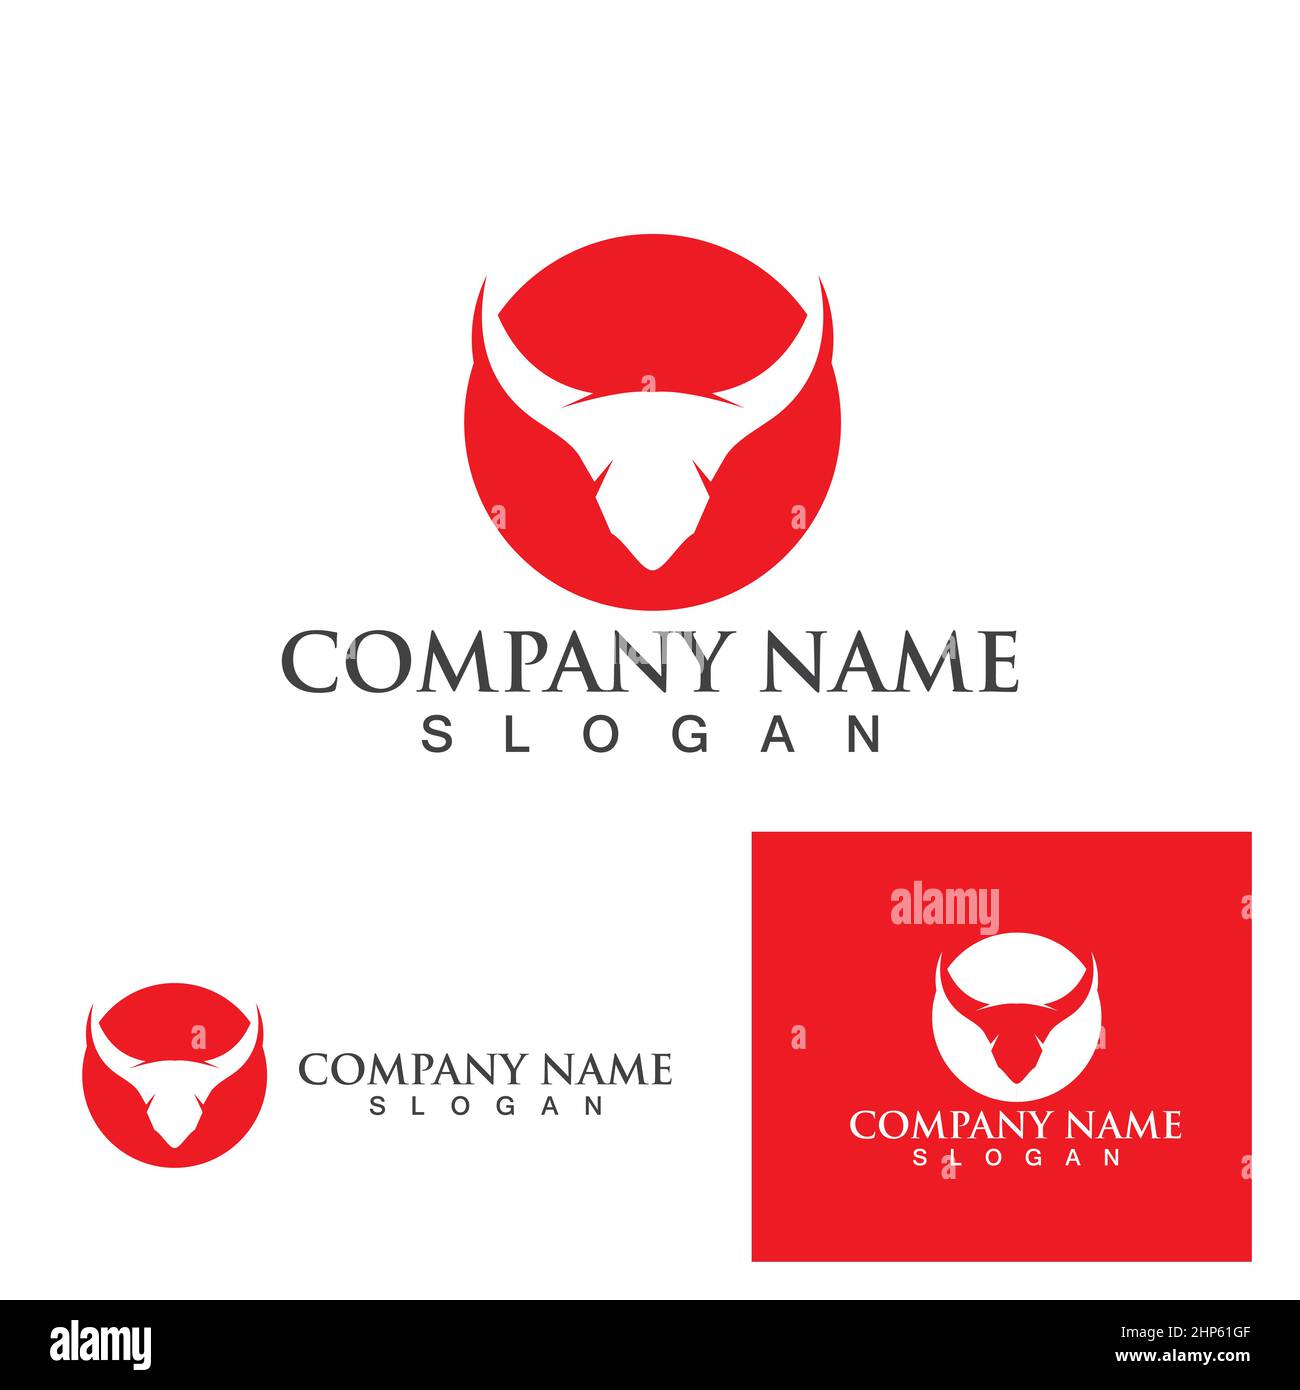 Cow Logo Template vector icon Stock Vector